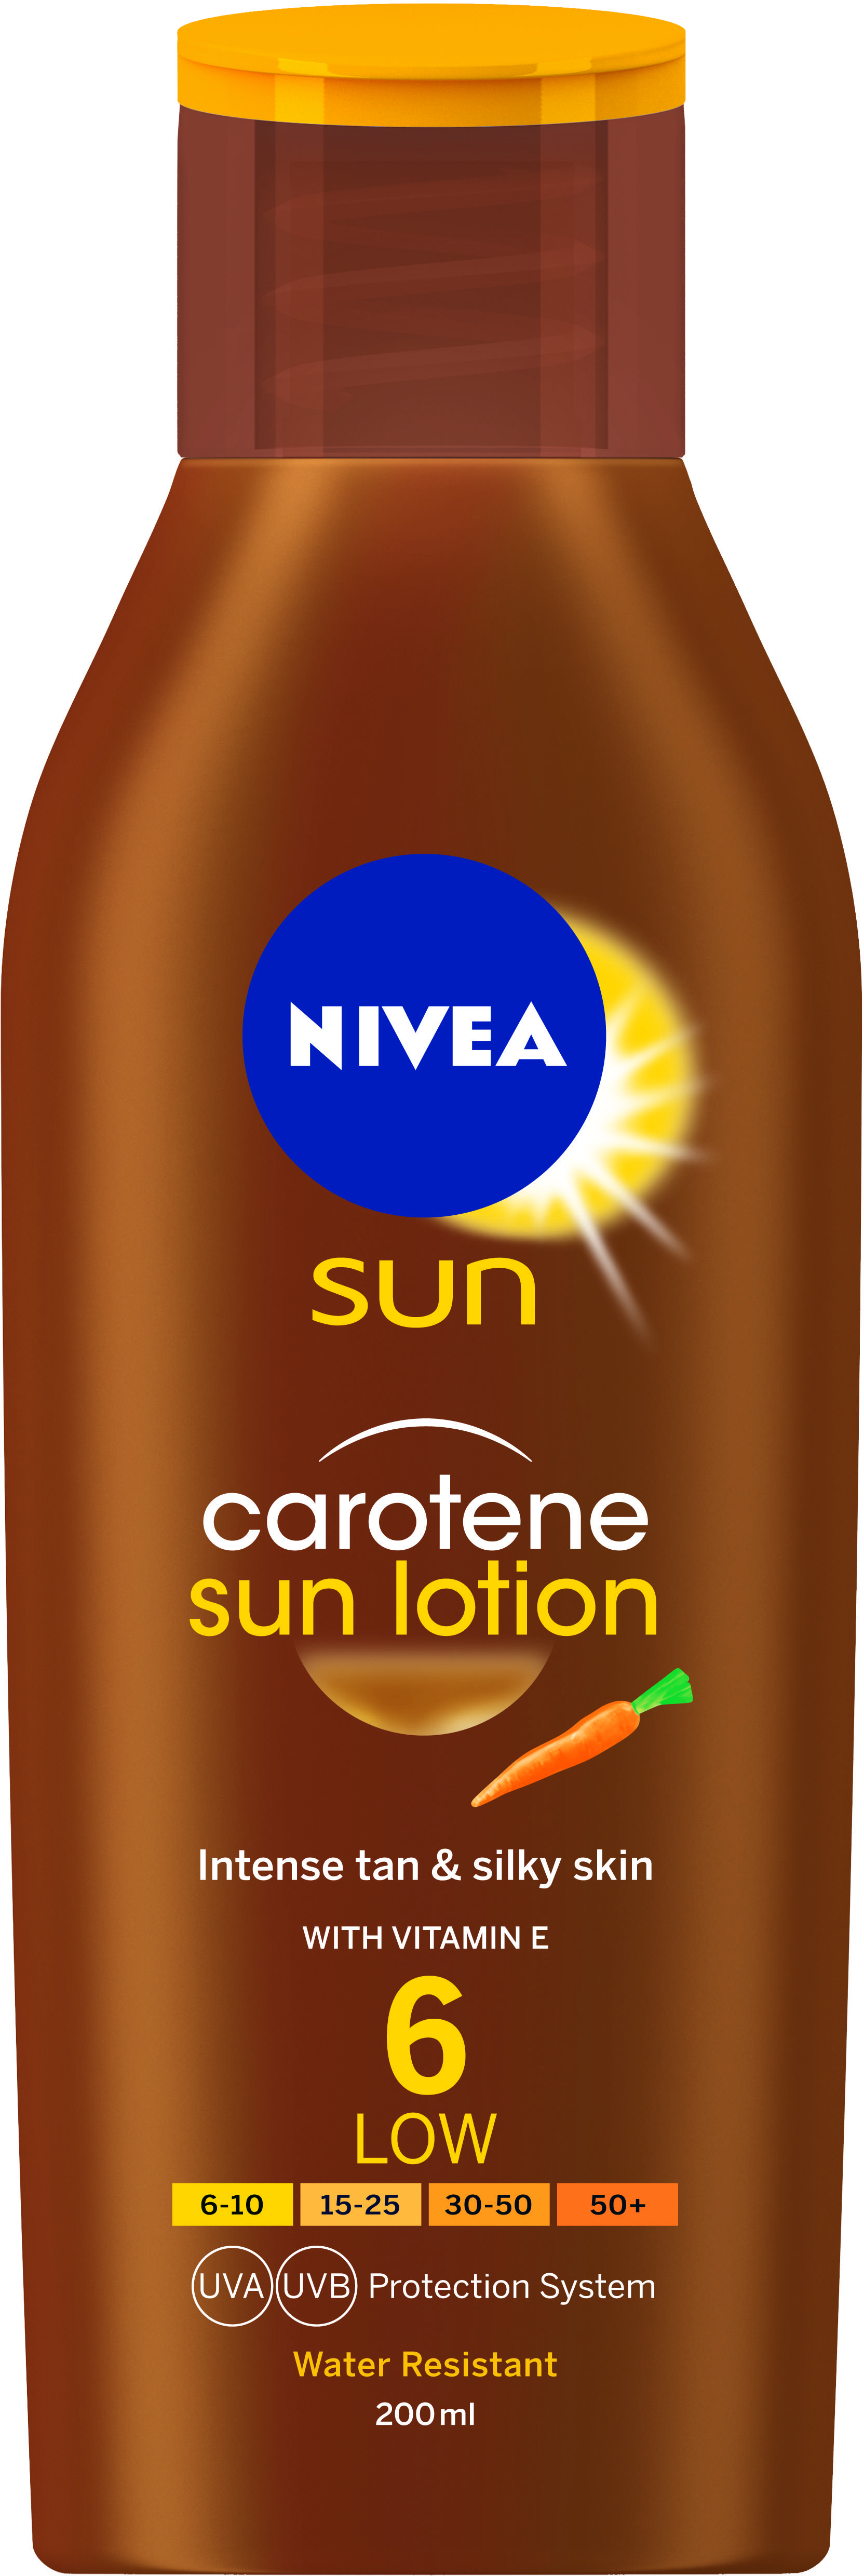 Nivea Carotene Sun Lotion SPF6 200ml